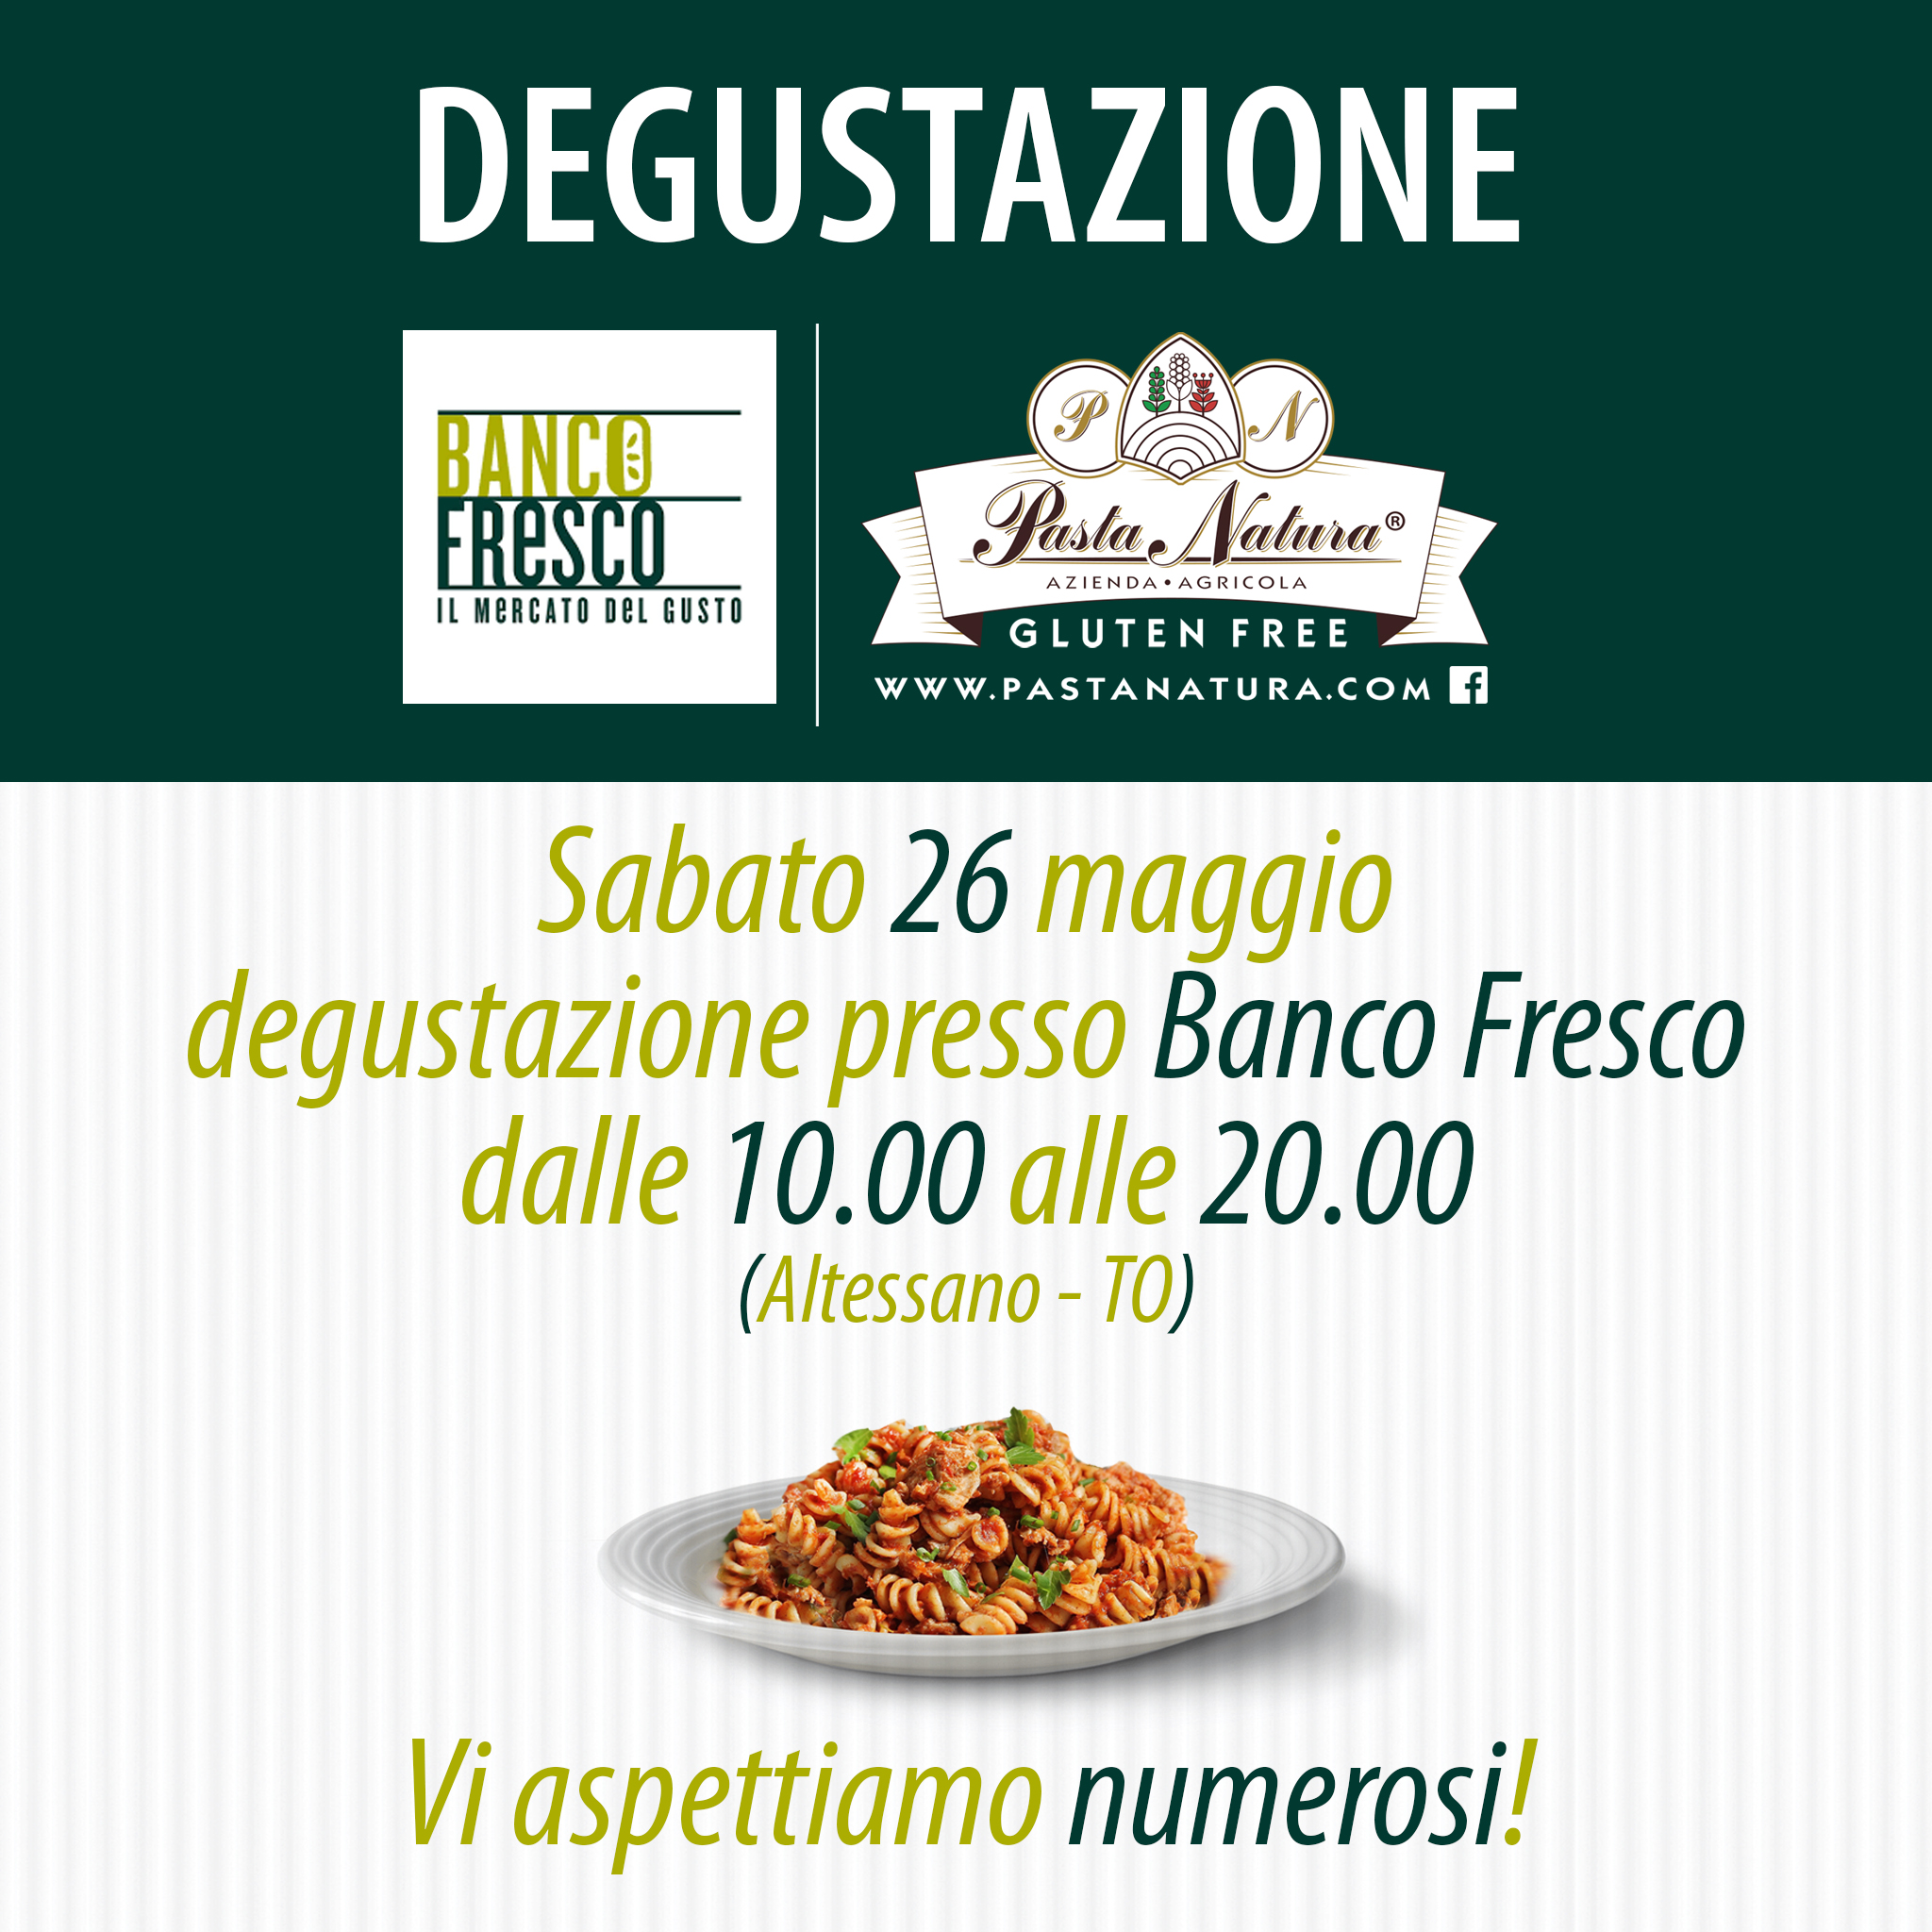 Prova la nuova Linea PASTA NATURA  naturalmente Gluten Free presso il punto vendita Banco Fresco di ALTESSANO a Torino